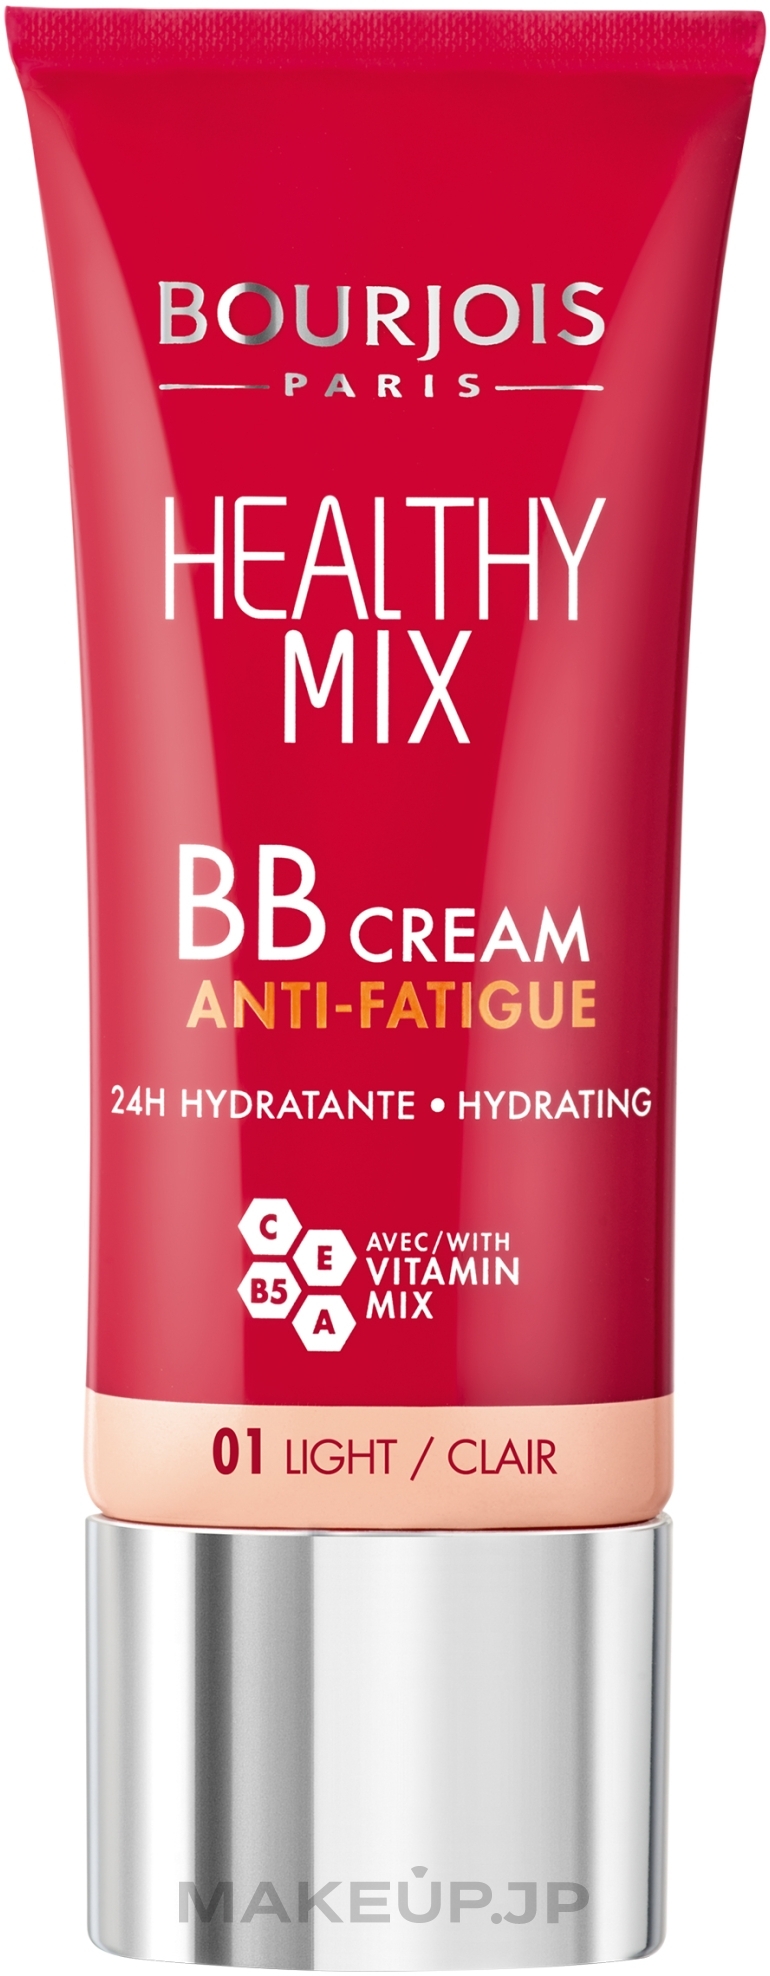 BB Cream - Bourjois Healthy Mix BB Cream Anti-Fatigue — photo 01 - Light/Clair